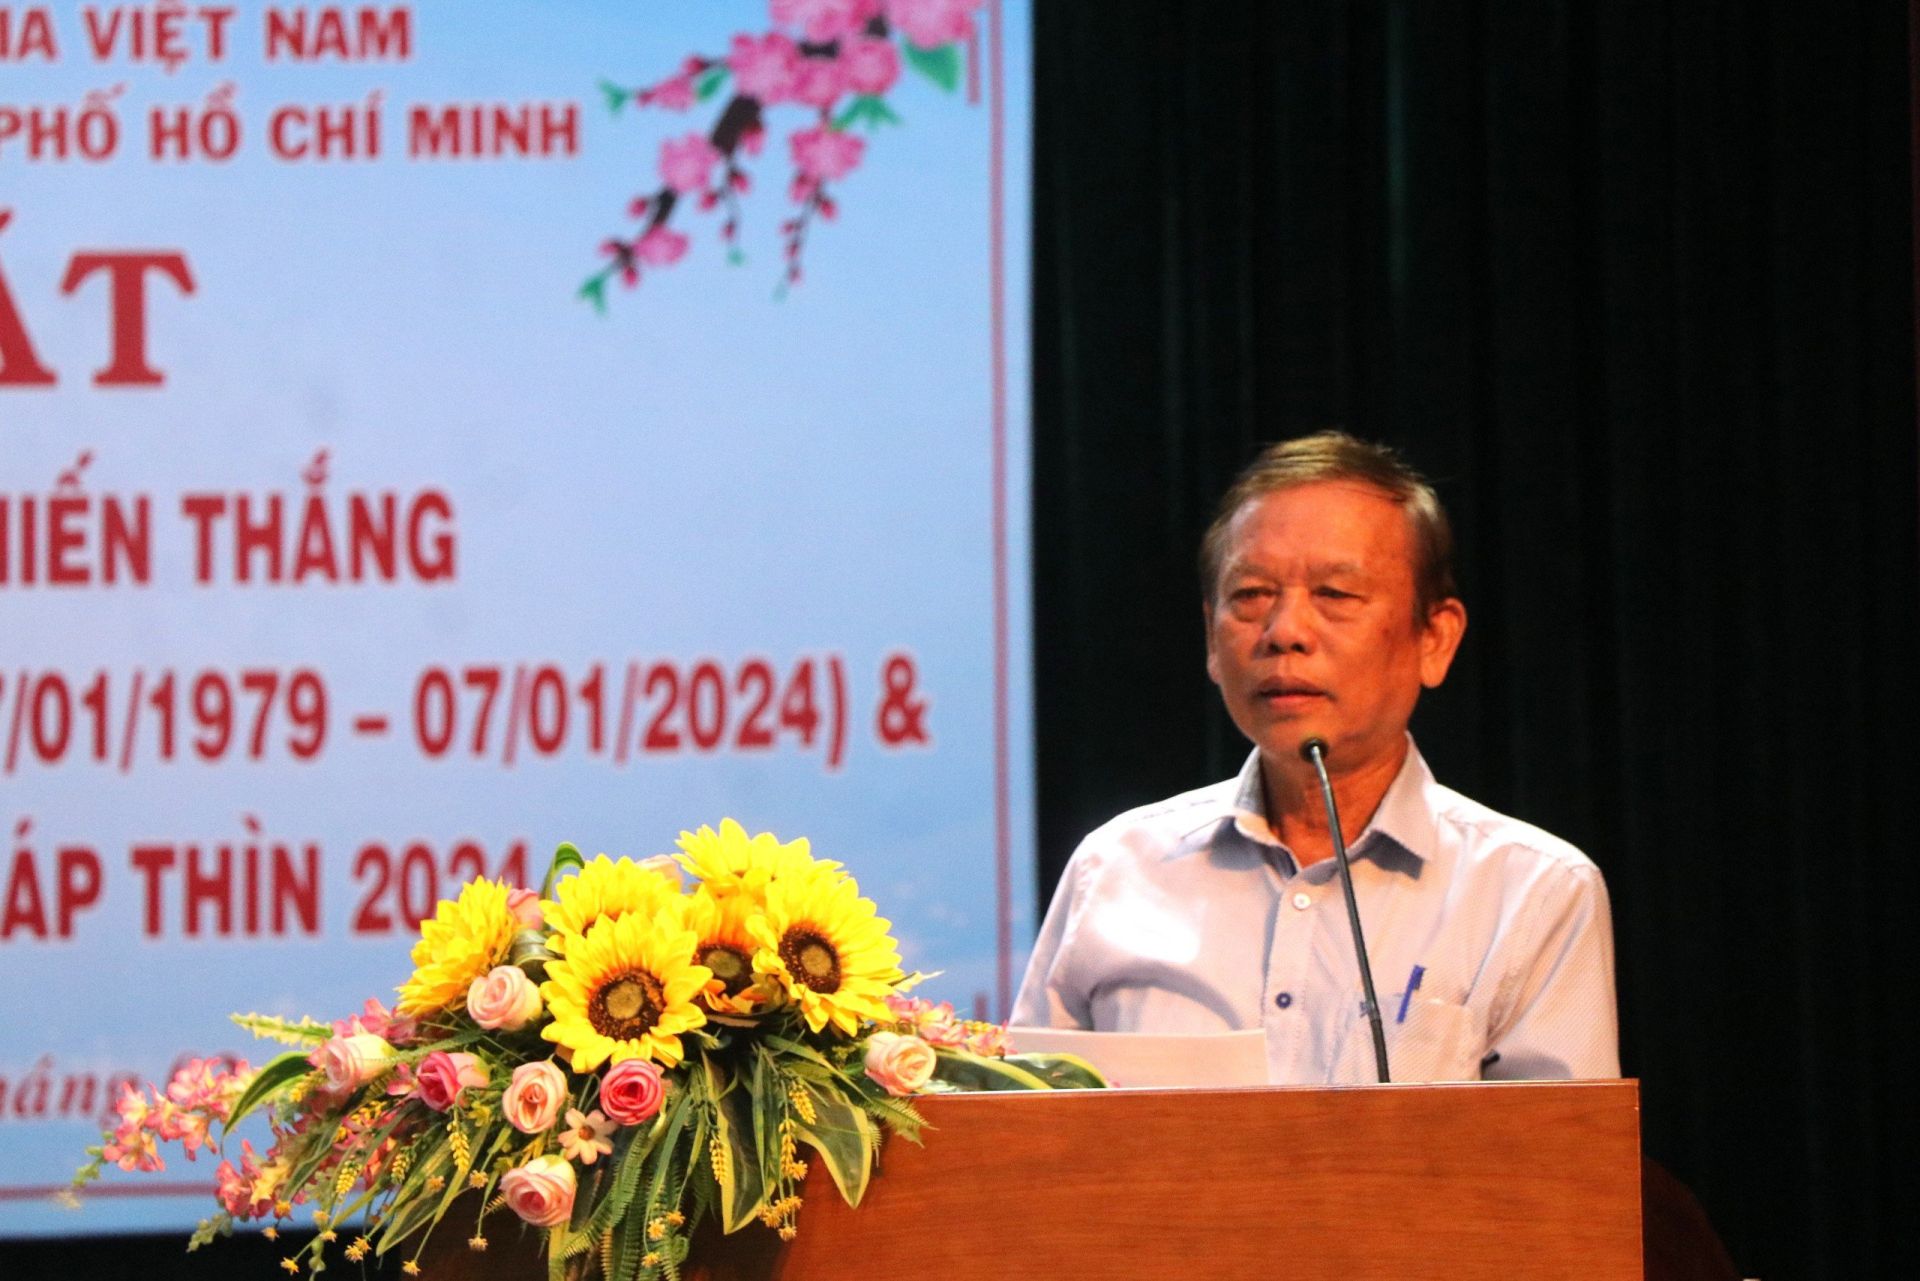 Ông Nguyễn Văn Triệu, Phó Ban Thường trực Ban Liên lạc Cựu chuyên gia giúp bạn Campuchia TPHCM phát biểu tại buổi họp mặt